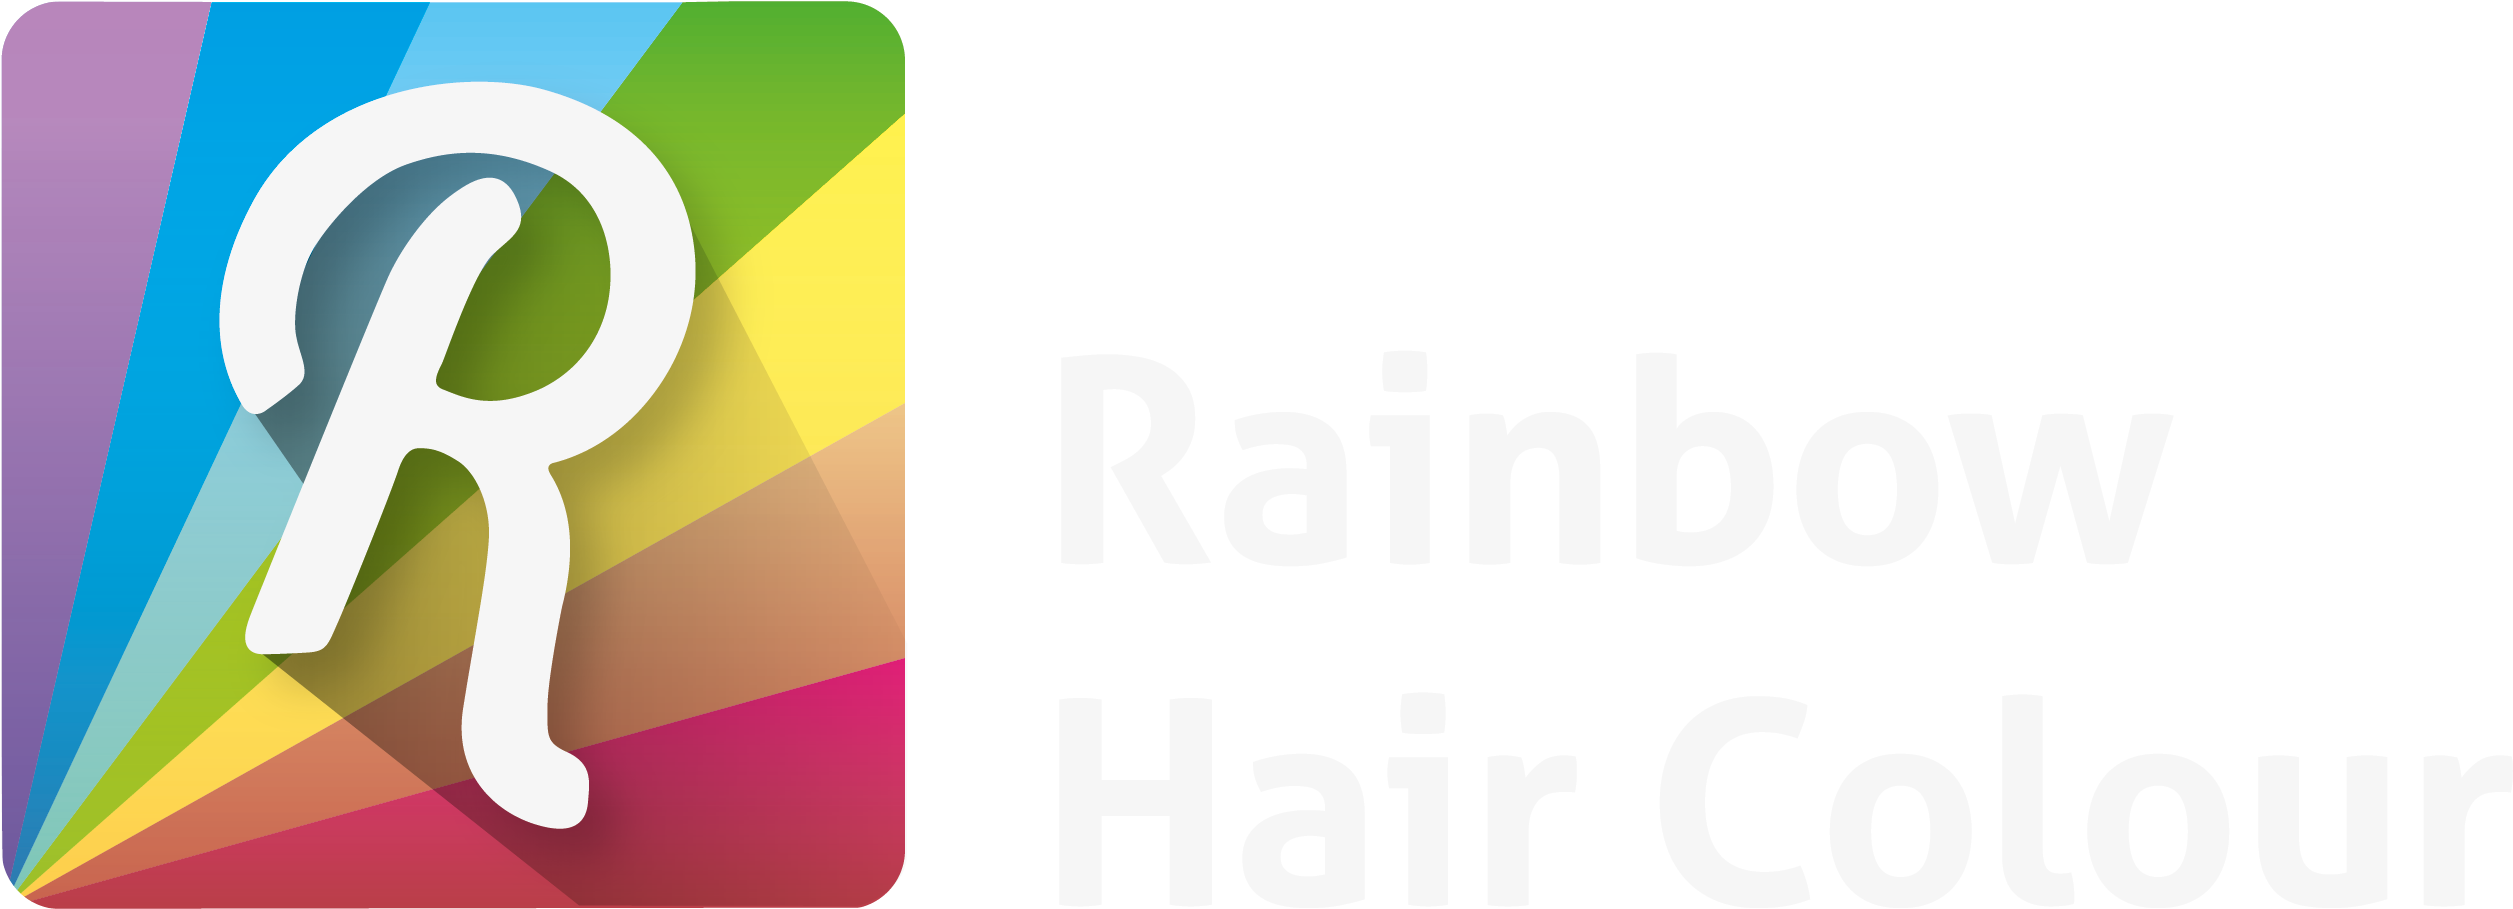 Jobs That Allow Colourful Rainbow Hair - Human Hair Color (2522x927)